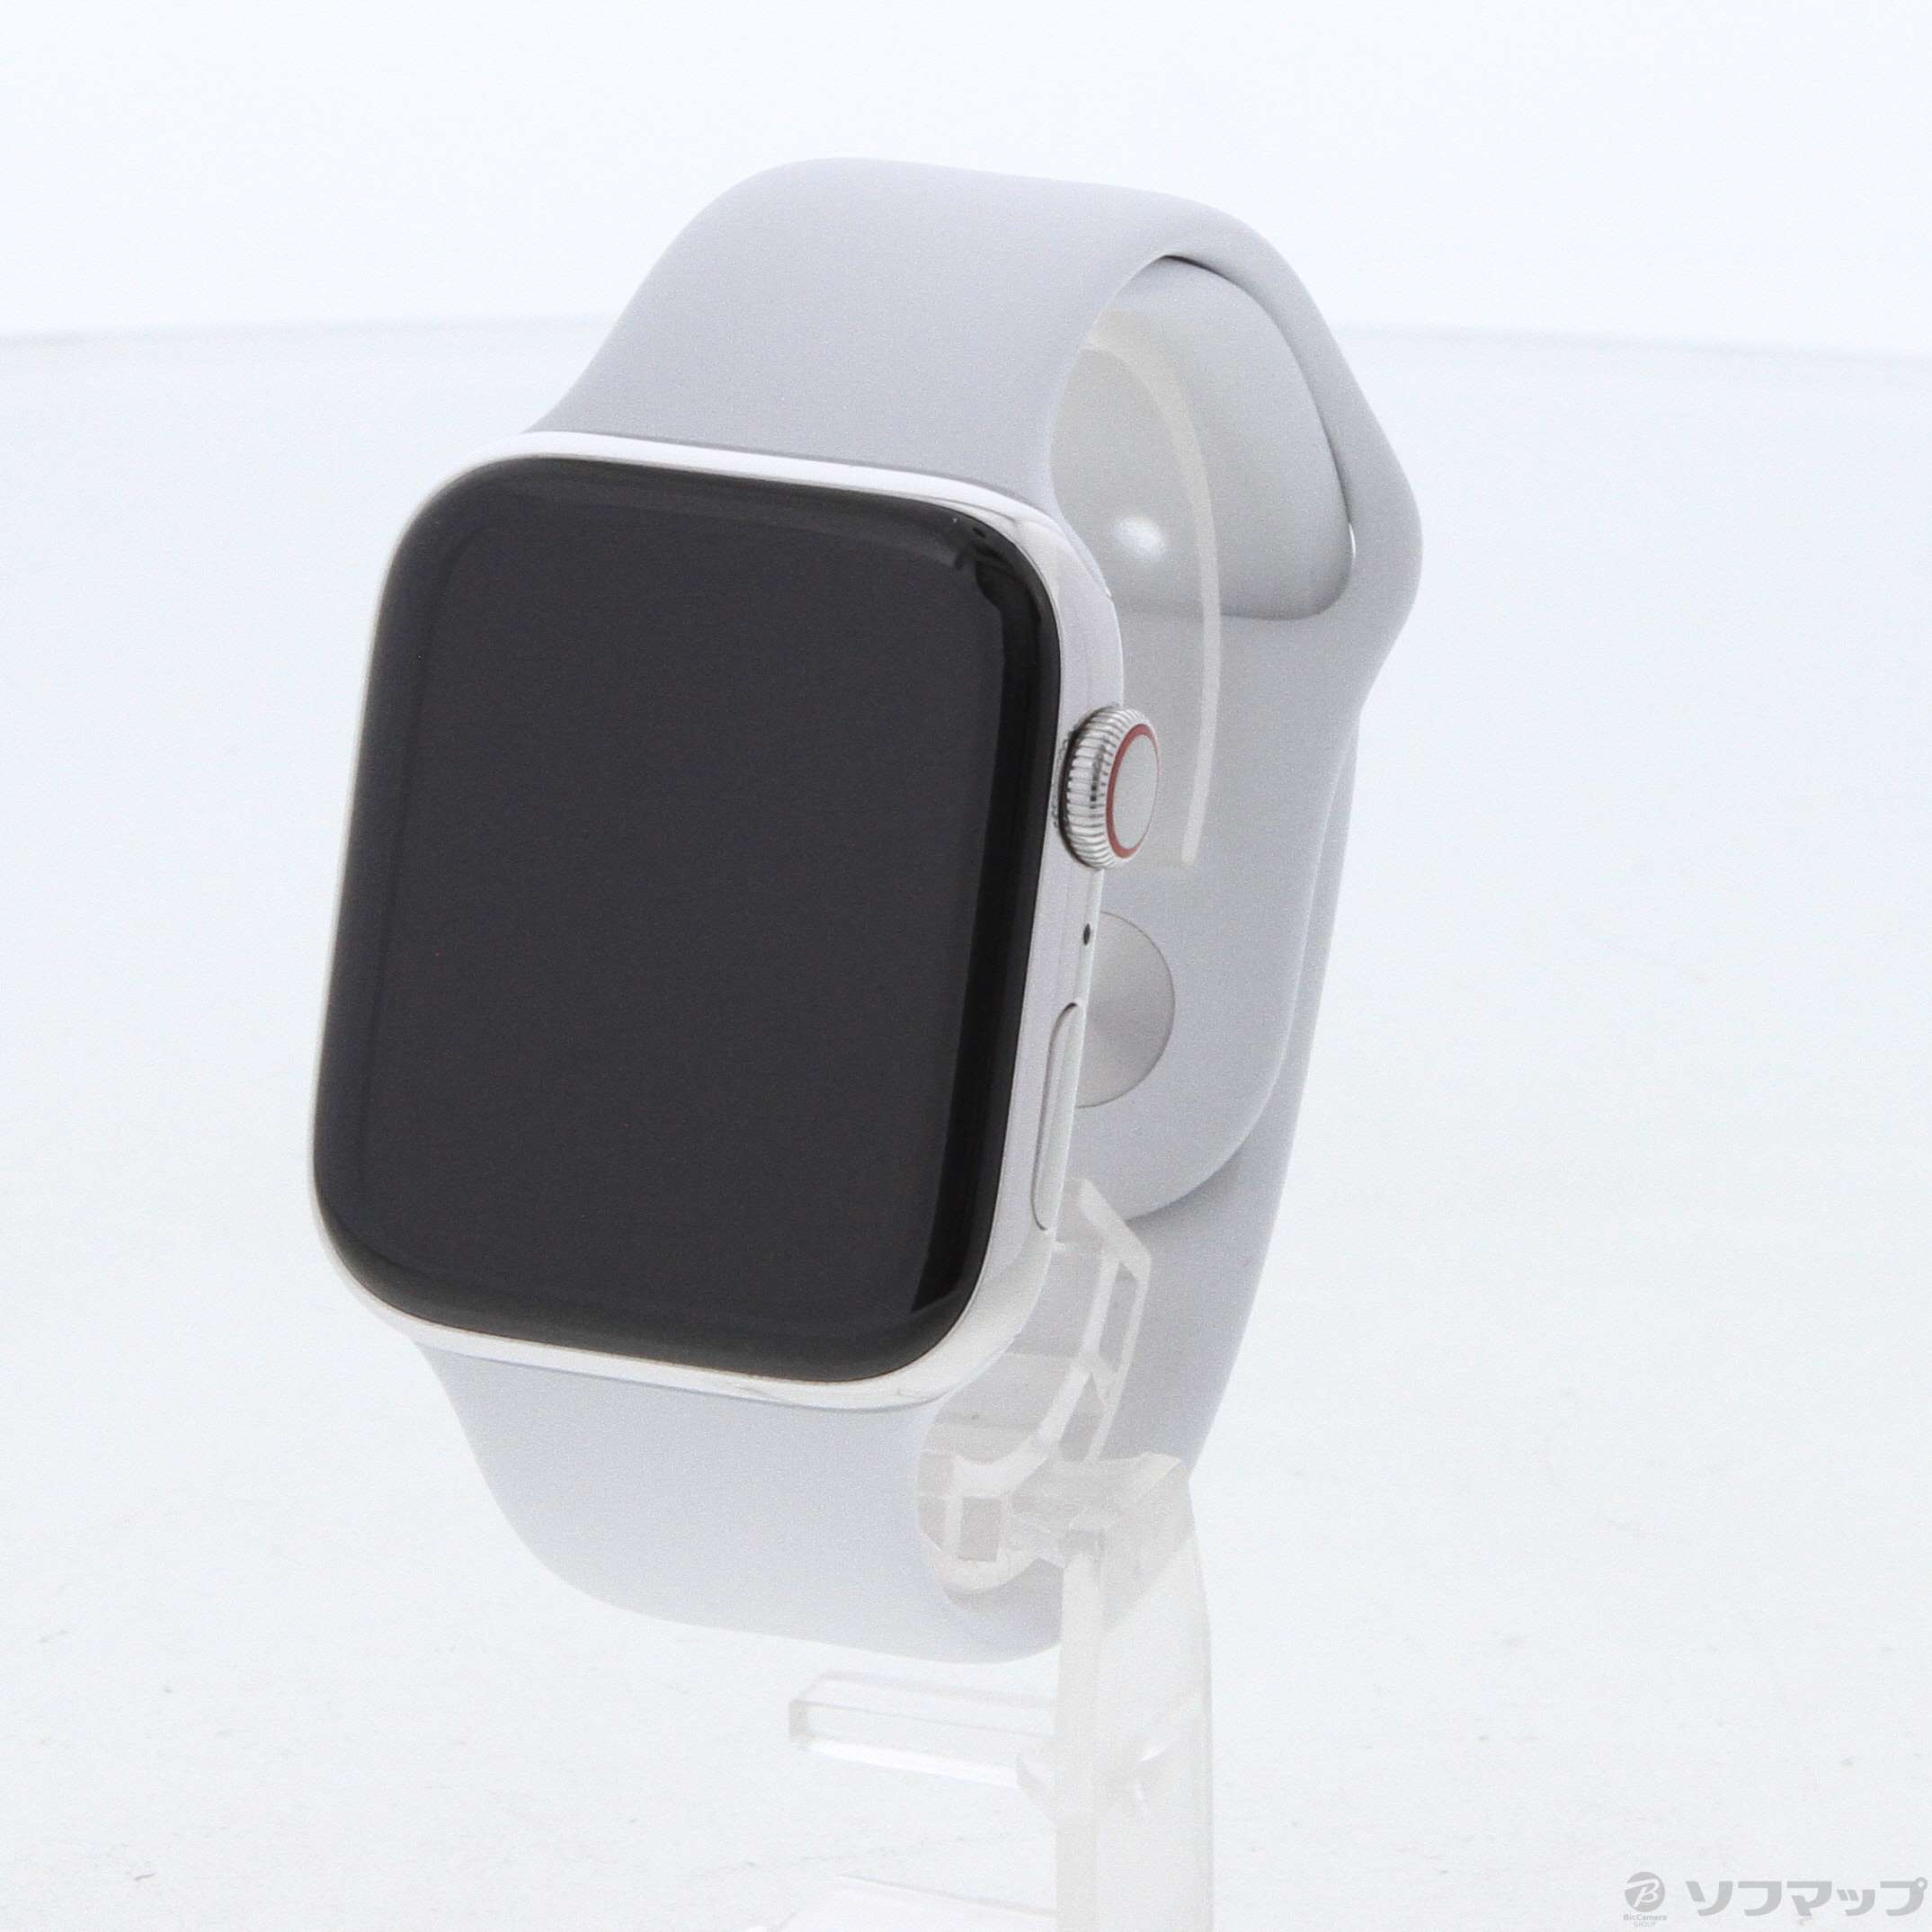 【中古】Apple Watch Series 4 GPS + Cellular 44mm ステンレス 